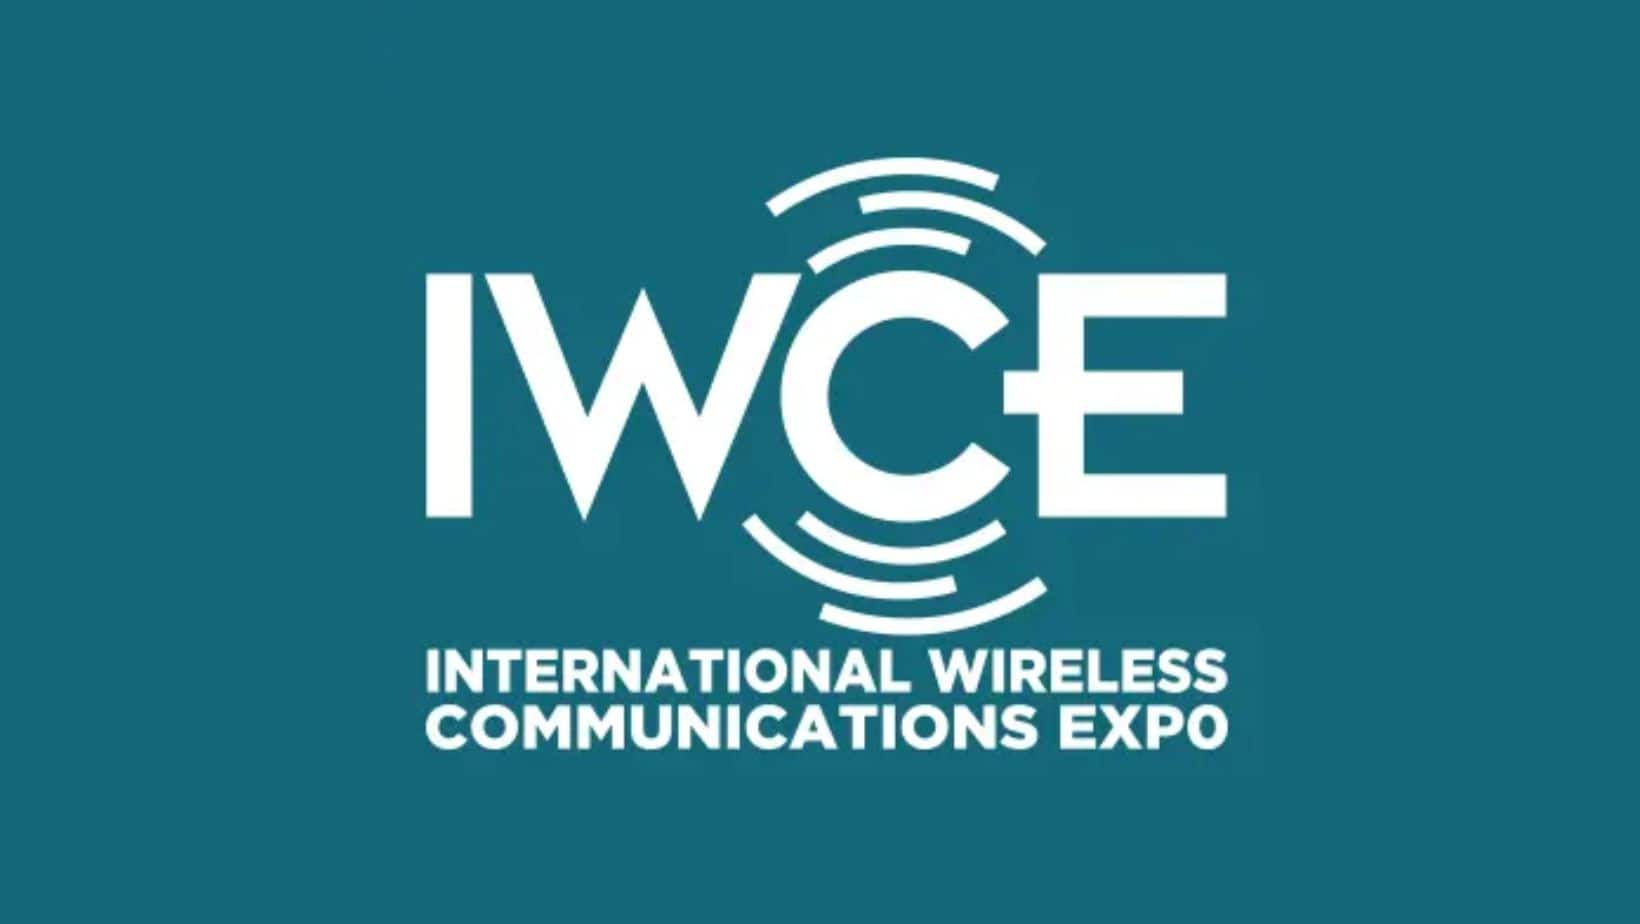 IWCE – Conheça mais sobre a exposição que está revolucionando o mundo da comunicação sem fio!